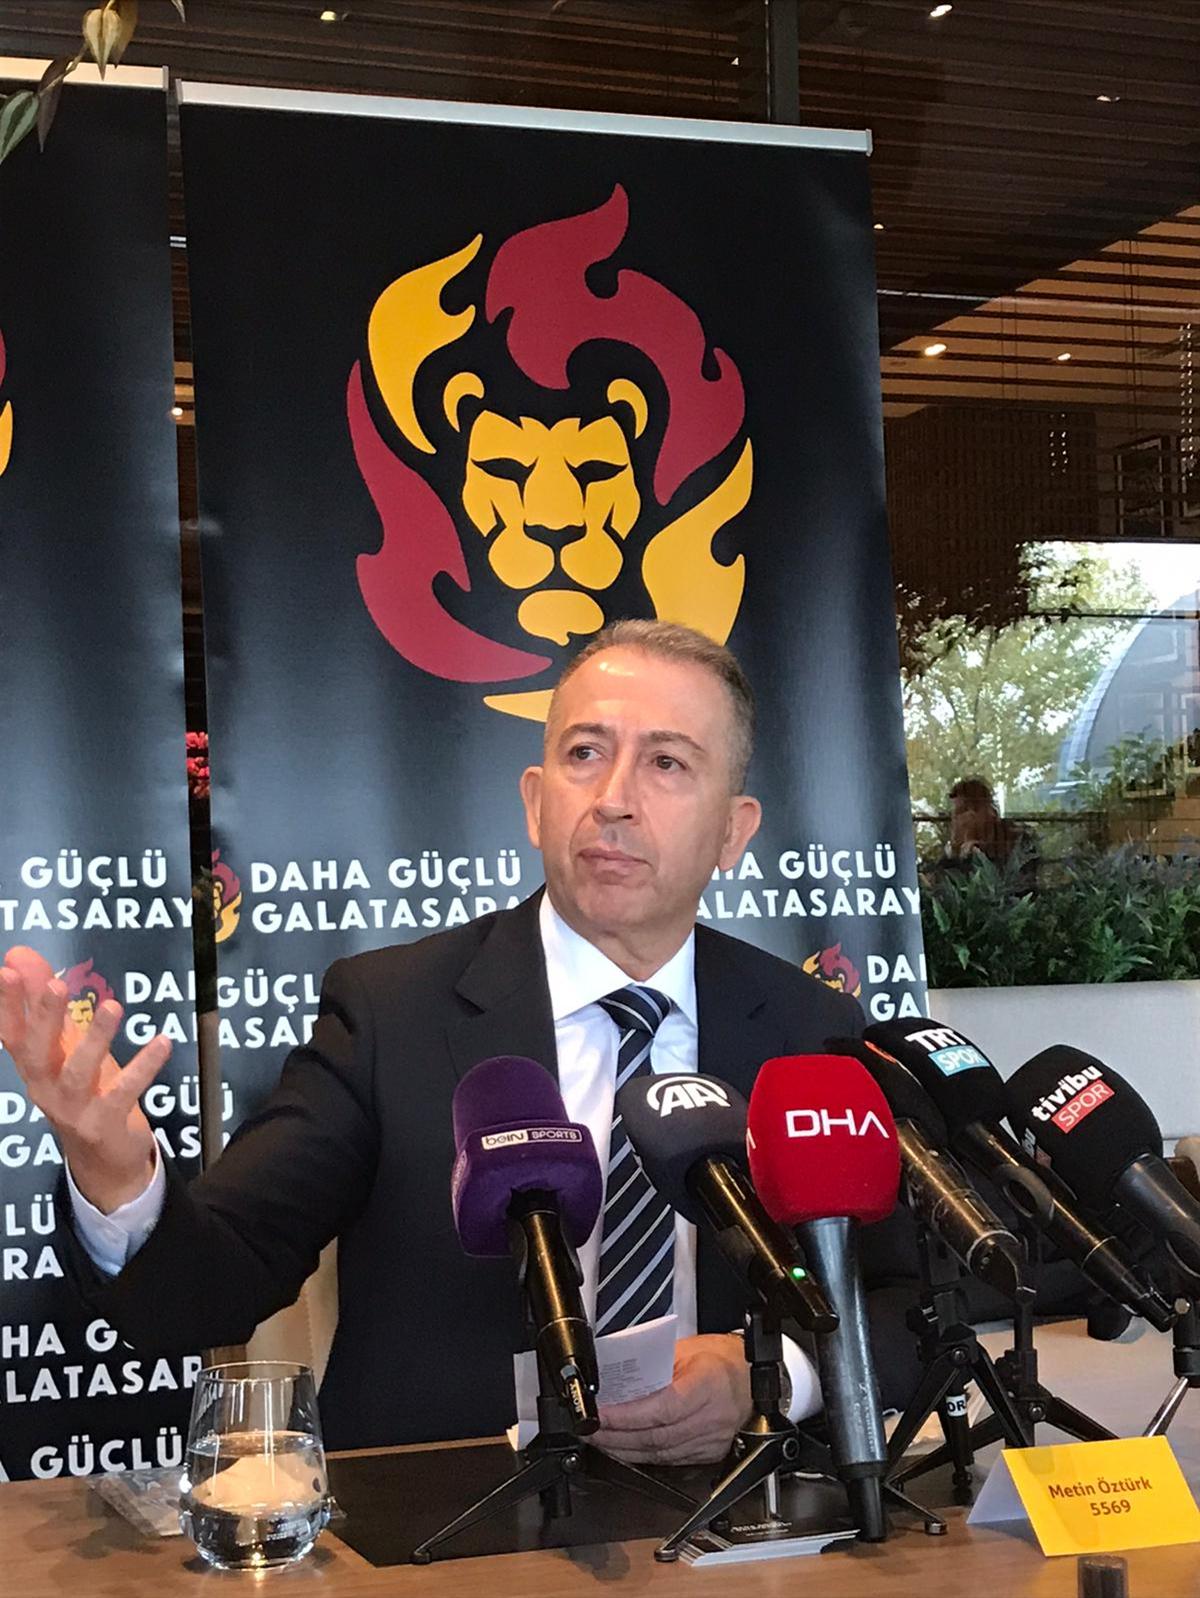 Galatasaray Bakan Aday Metin ztrk projelerini anlatt